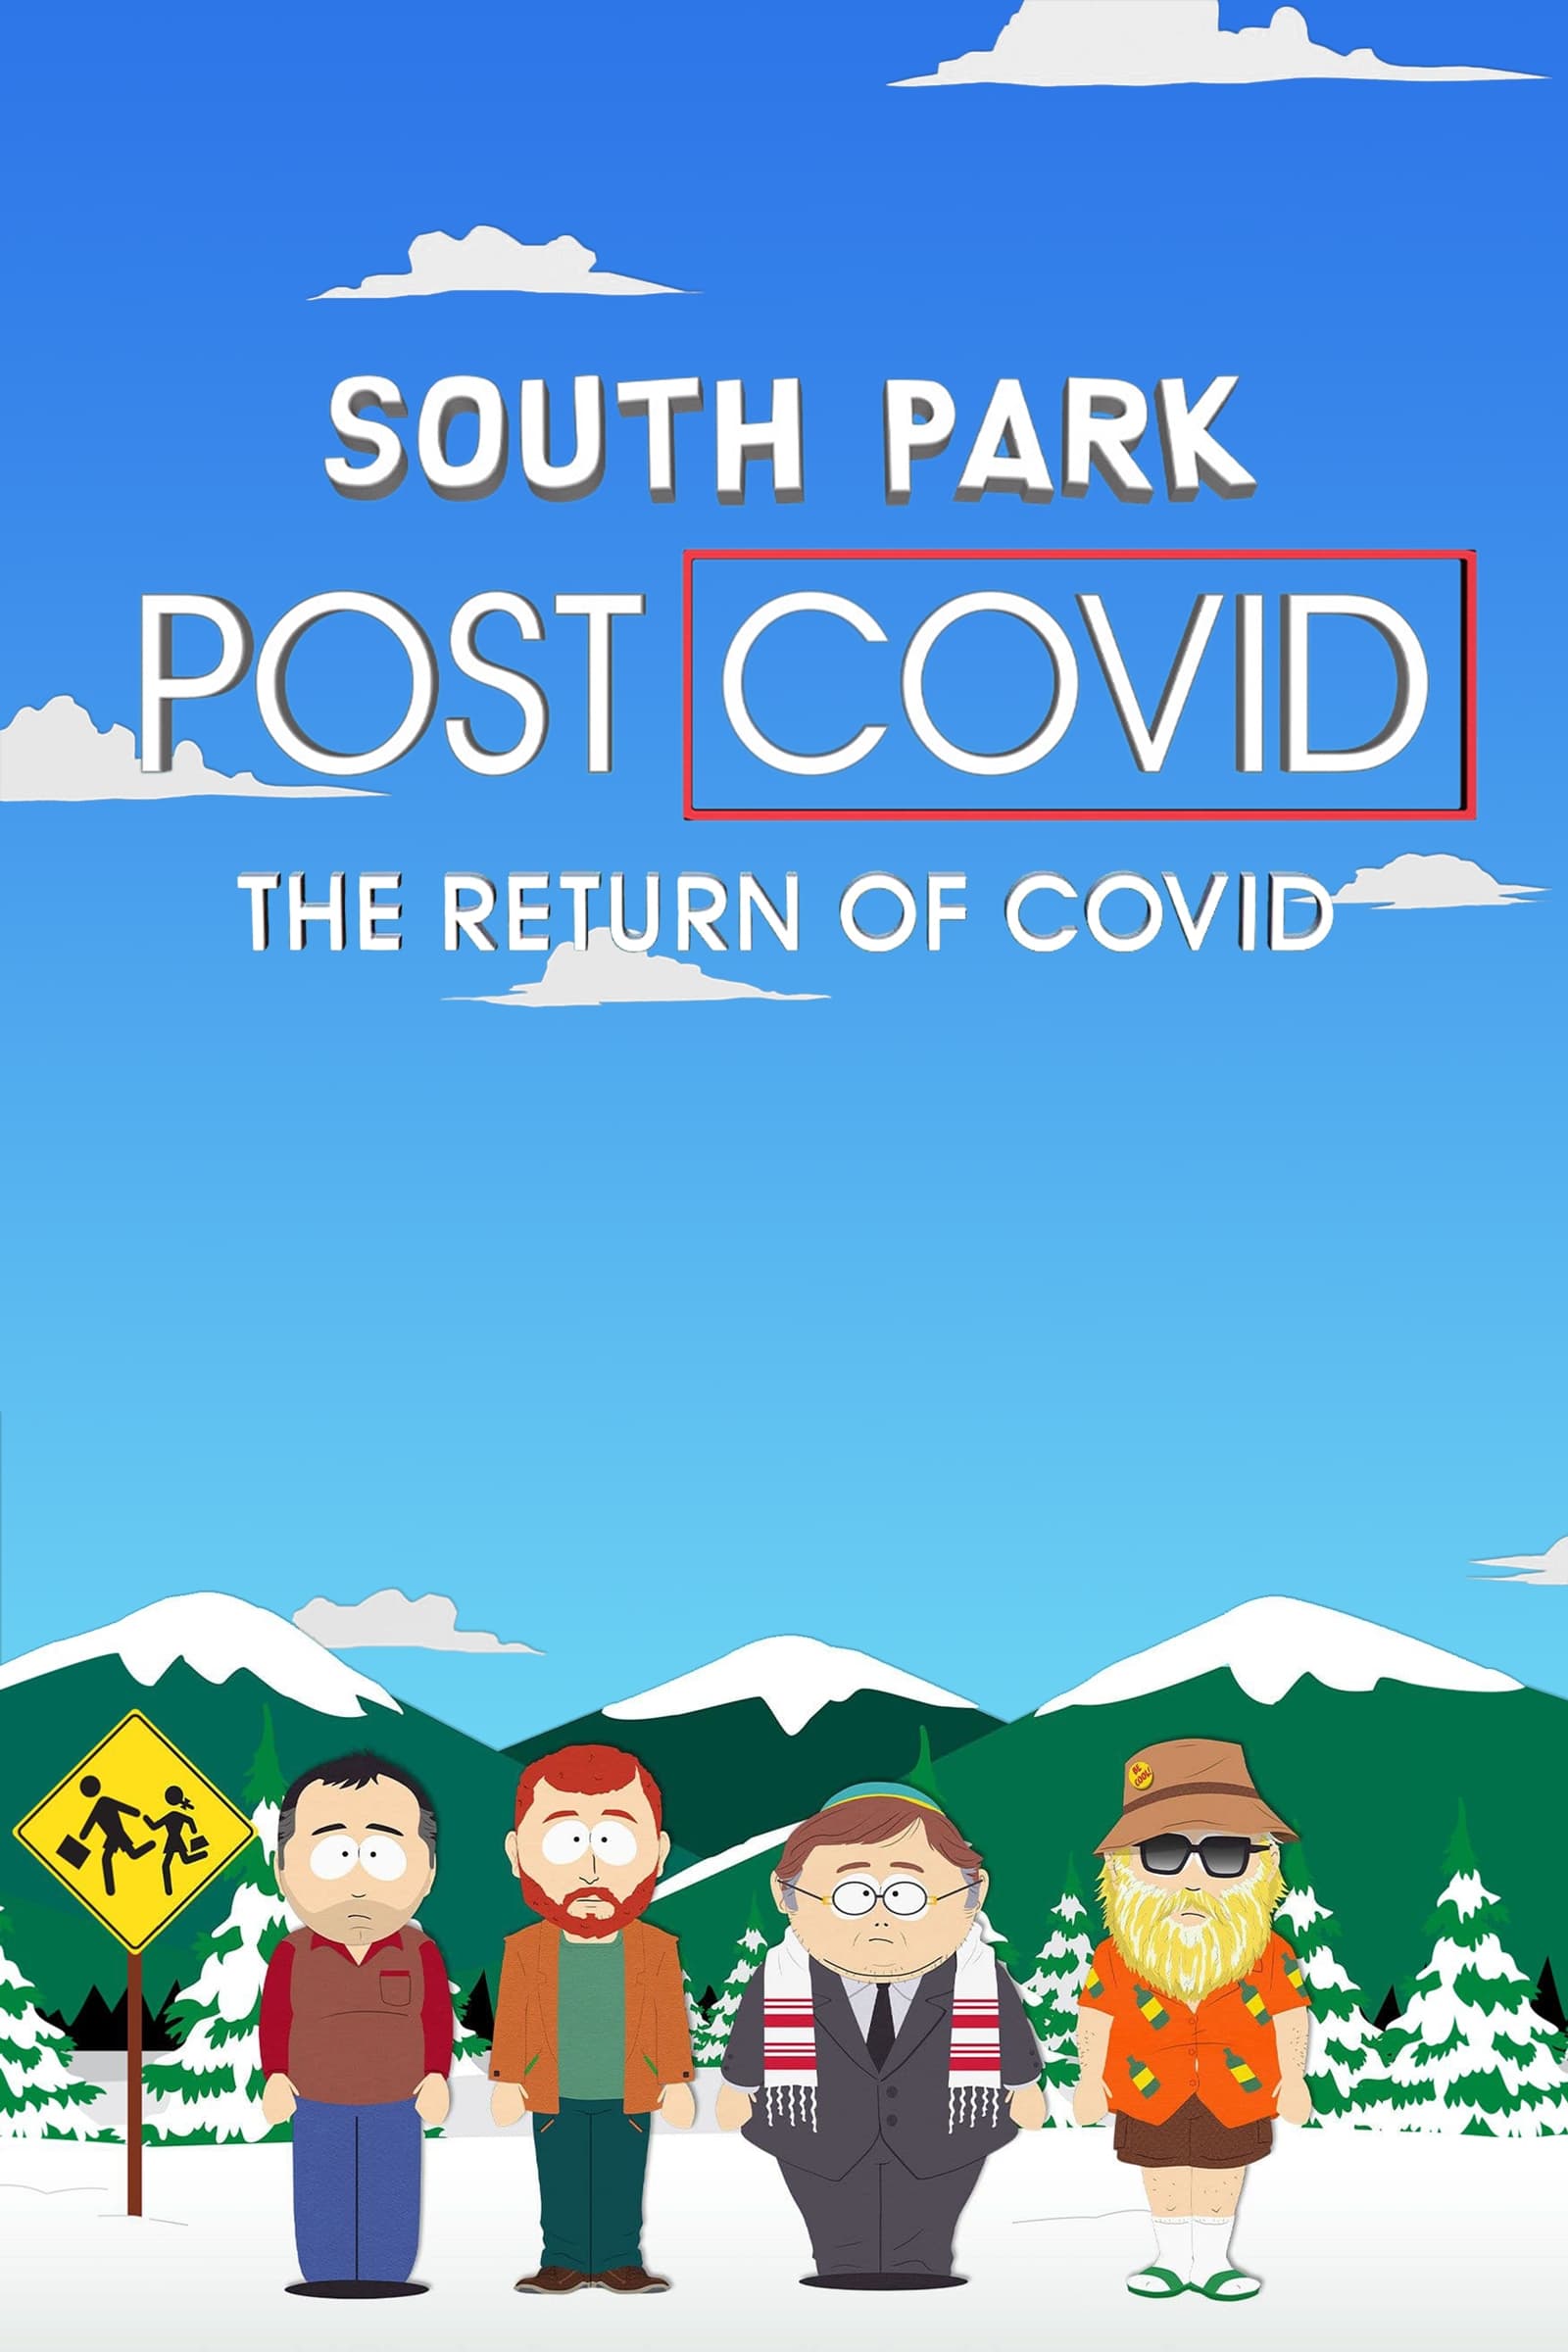 South Park Pos Covid El Retorno Del Covid